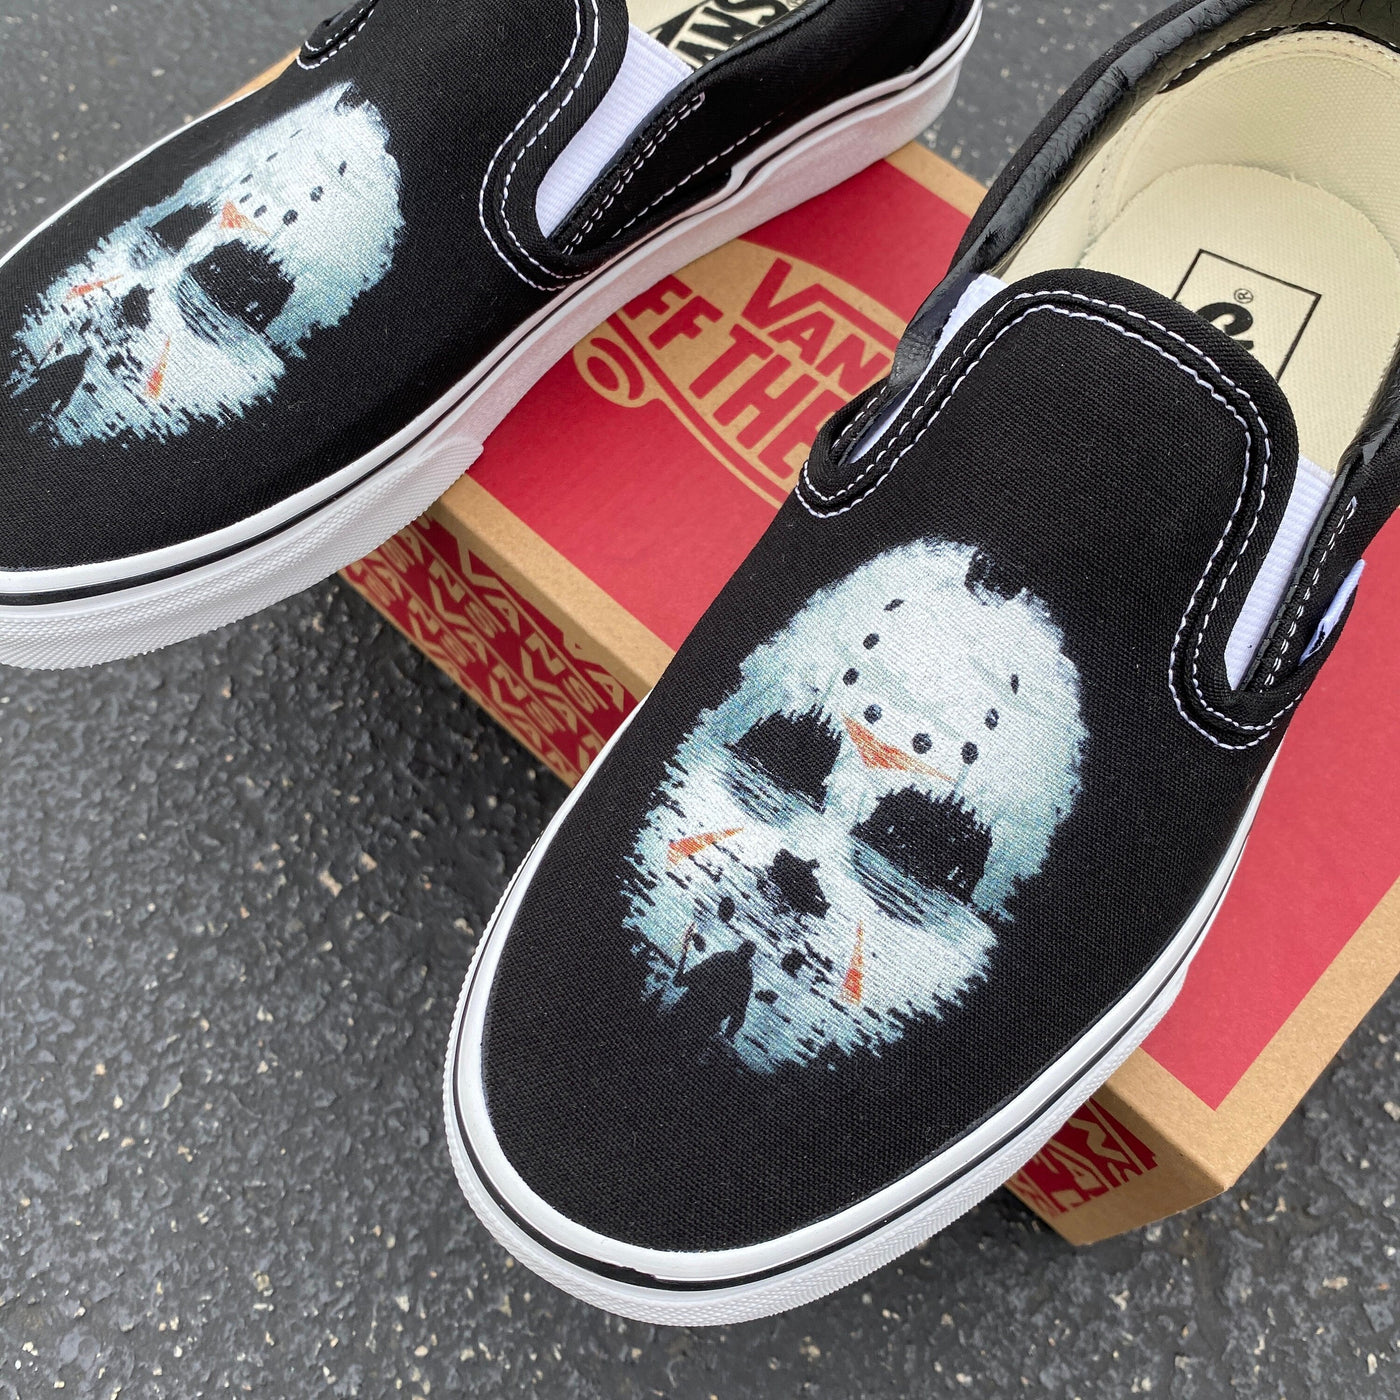 Friday the 13th Jason Custom Vans Slip On Sneakers